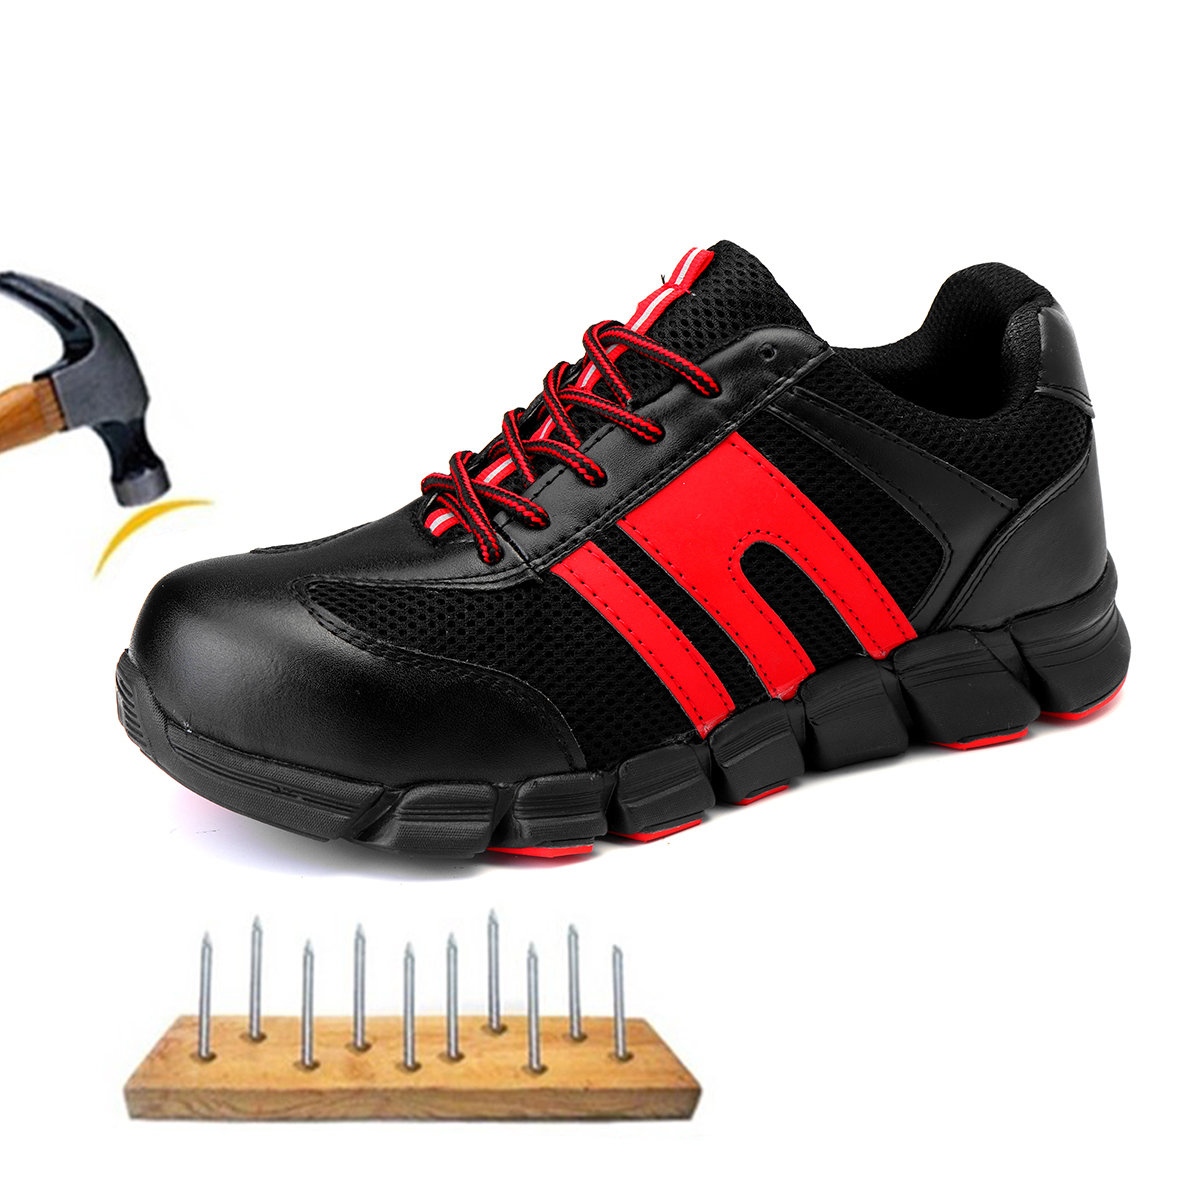 

Men Anti-Smashing Steel Toe Safety Work Shoes, Black